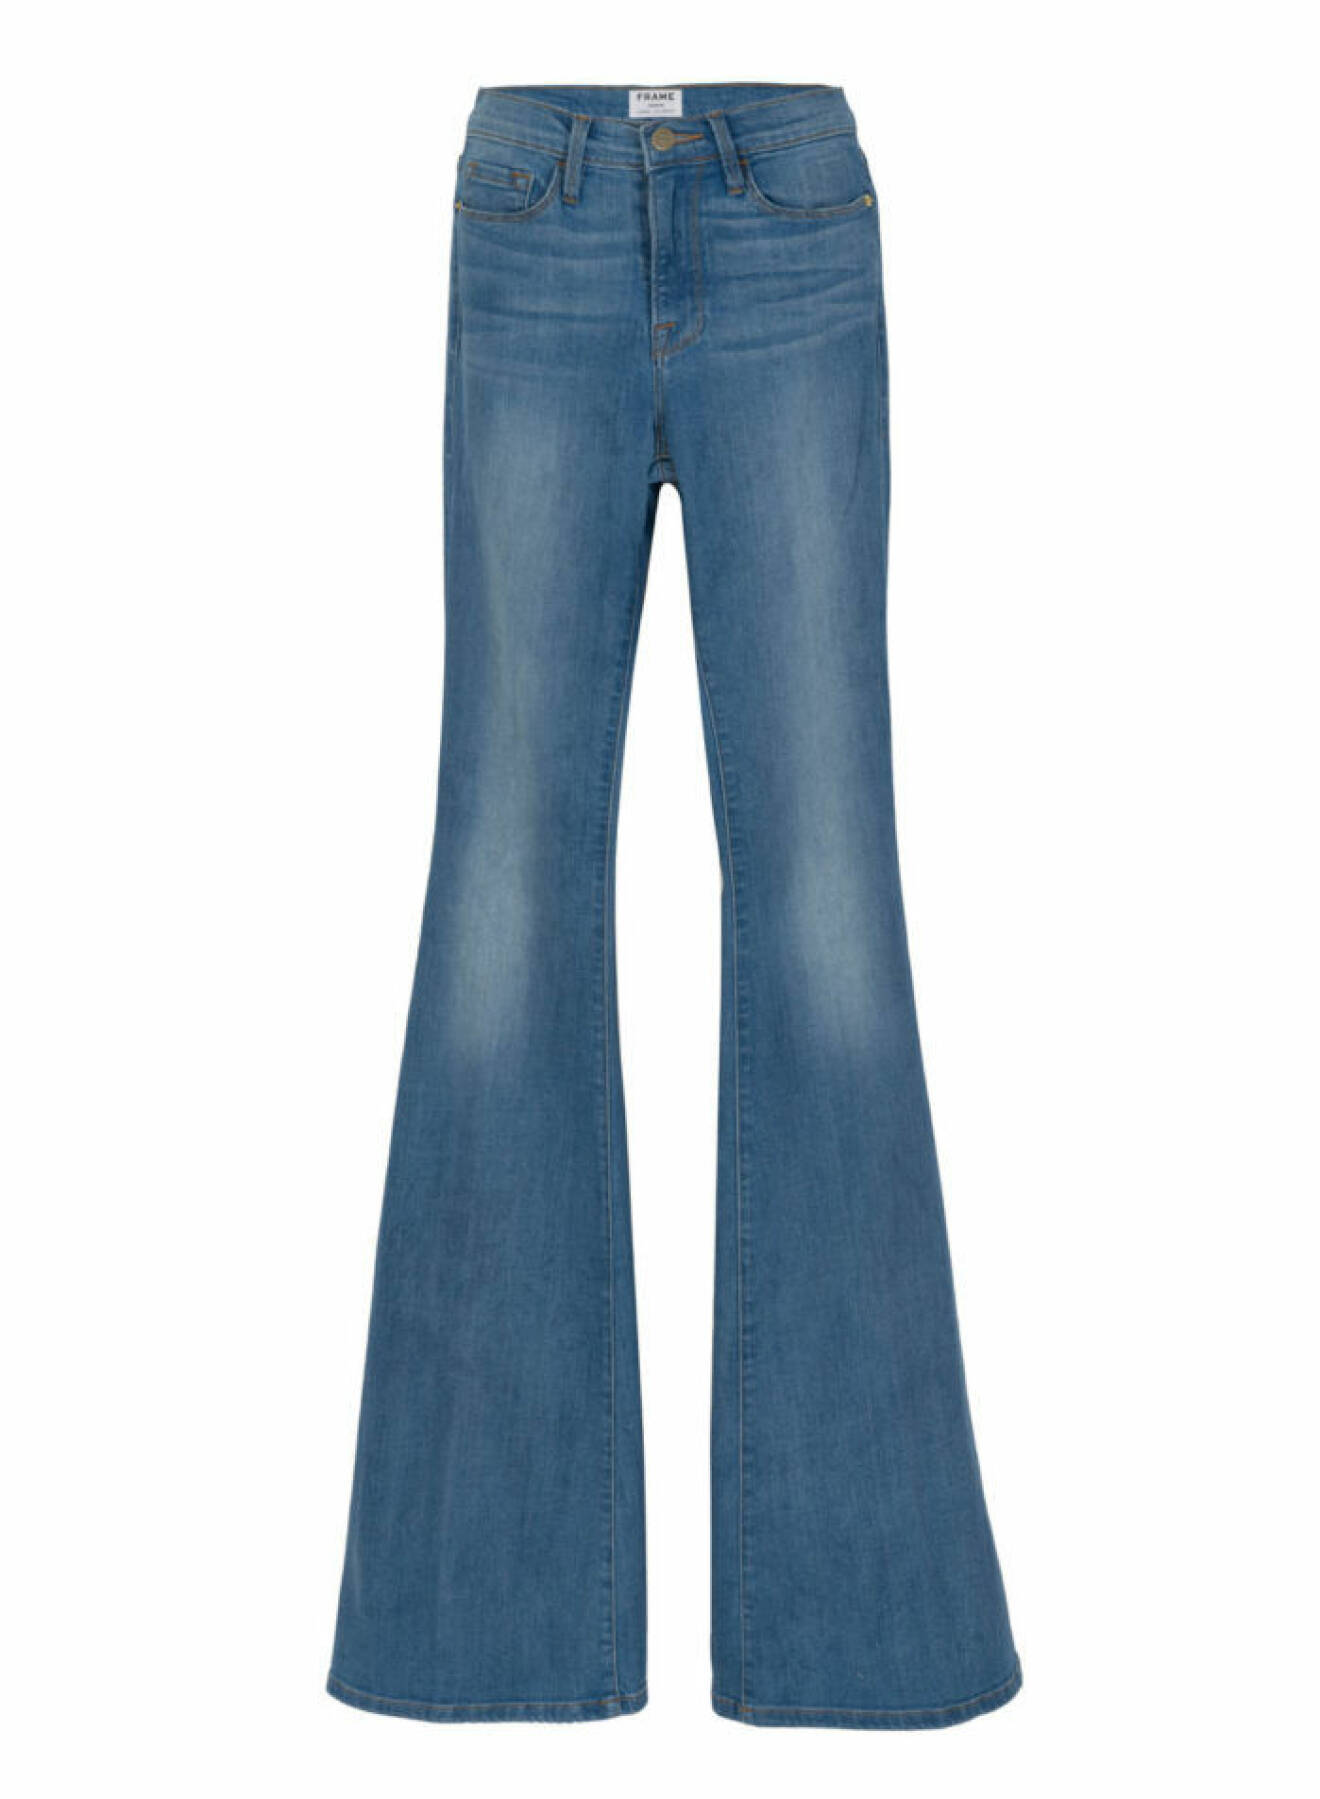 Att 70-talet är hett har väl knappast någon missat. Med ett par utsvängda jeans är du där, sommarfräscht med en enkel t-shirt. Jeansen med hög midja kommer från Frame Denims pre-autumn kollektion och kostar 2 495 kr.